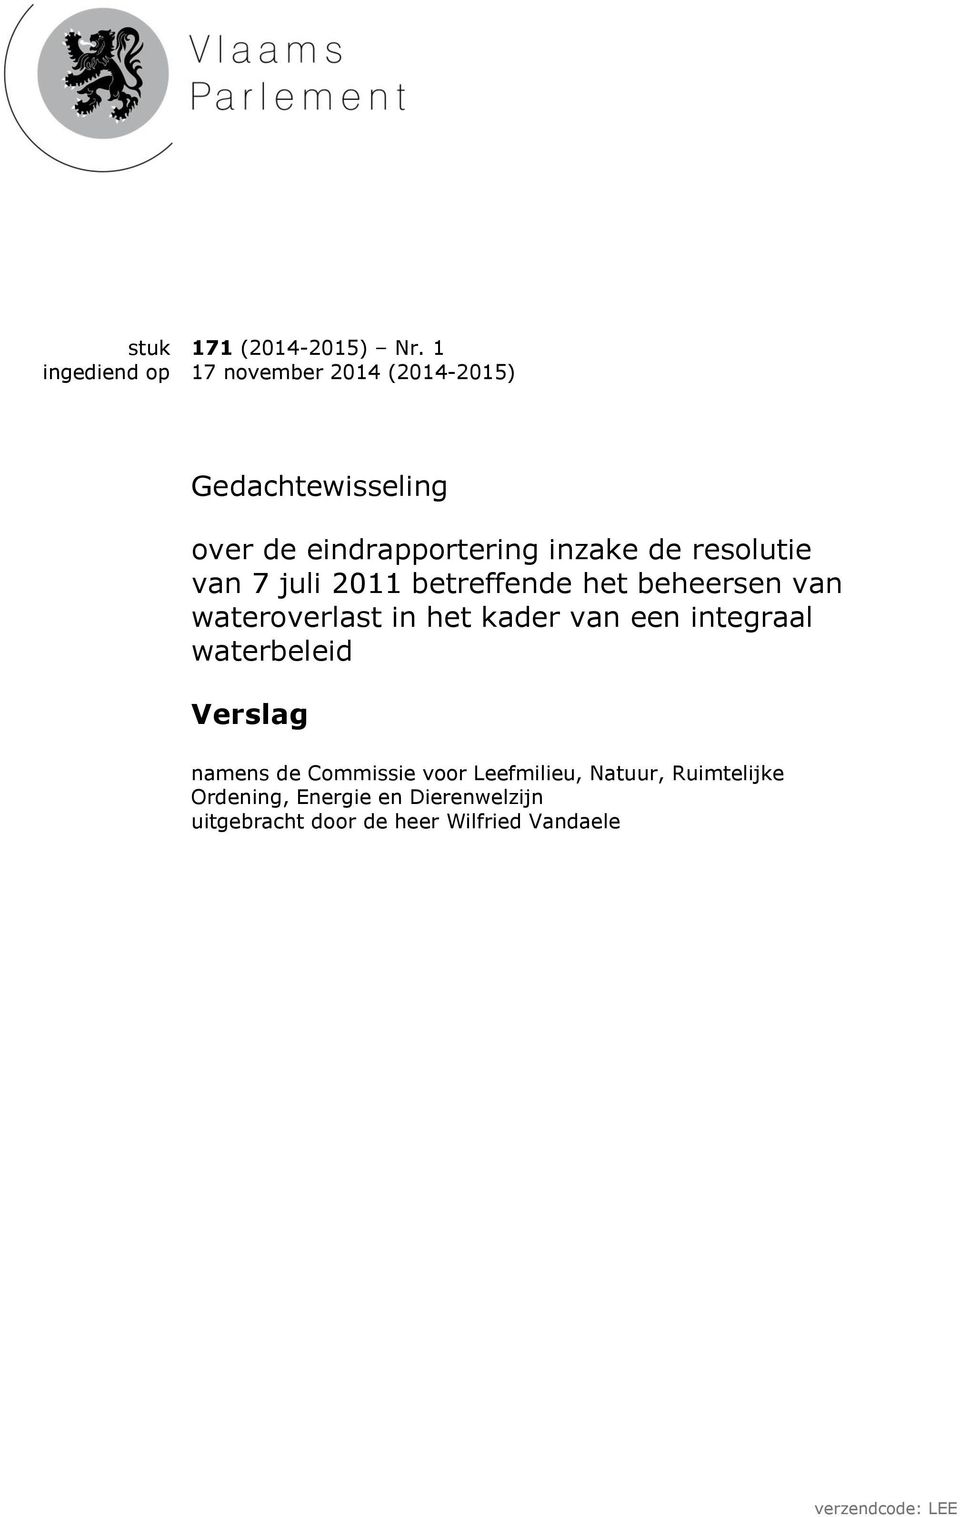 resolutie van 7 juli 2011 betreffende het beheersen van wateroverlast in het kader van een